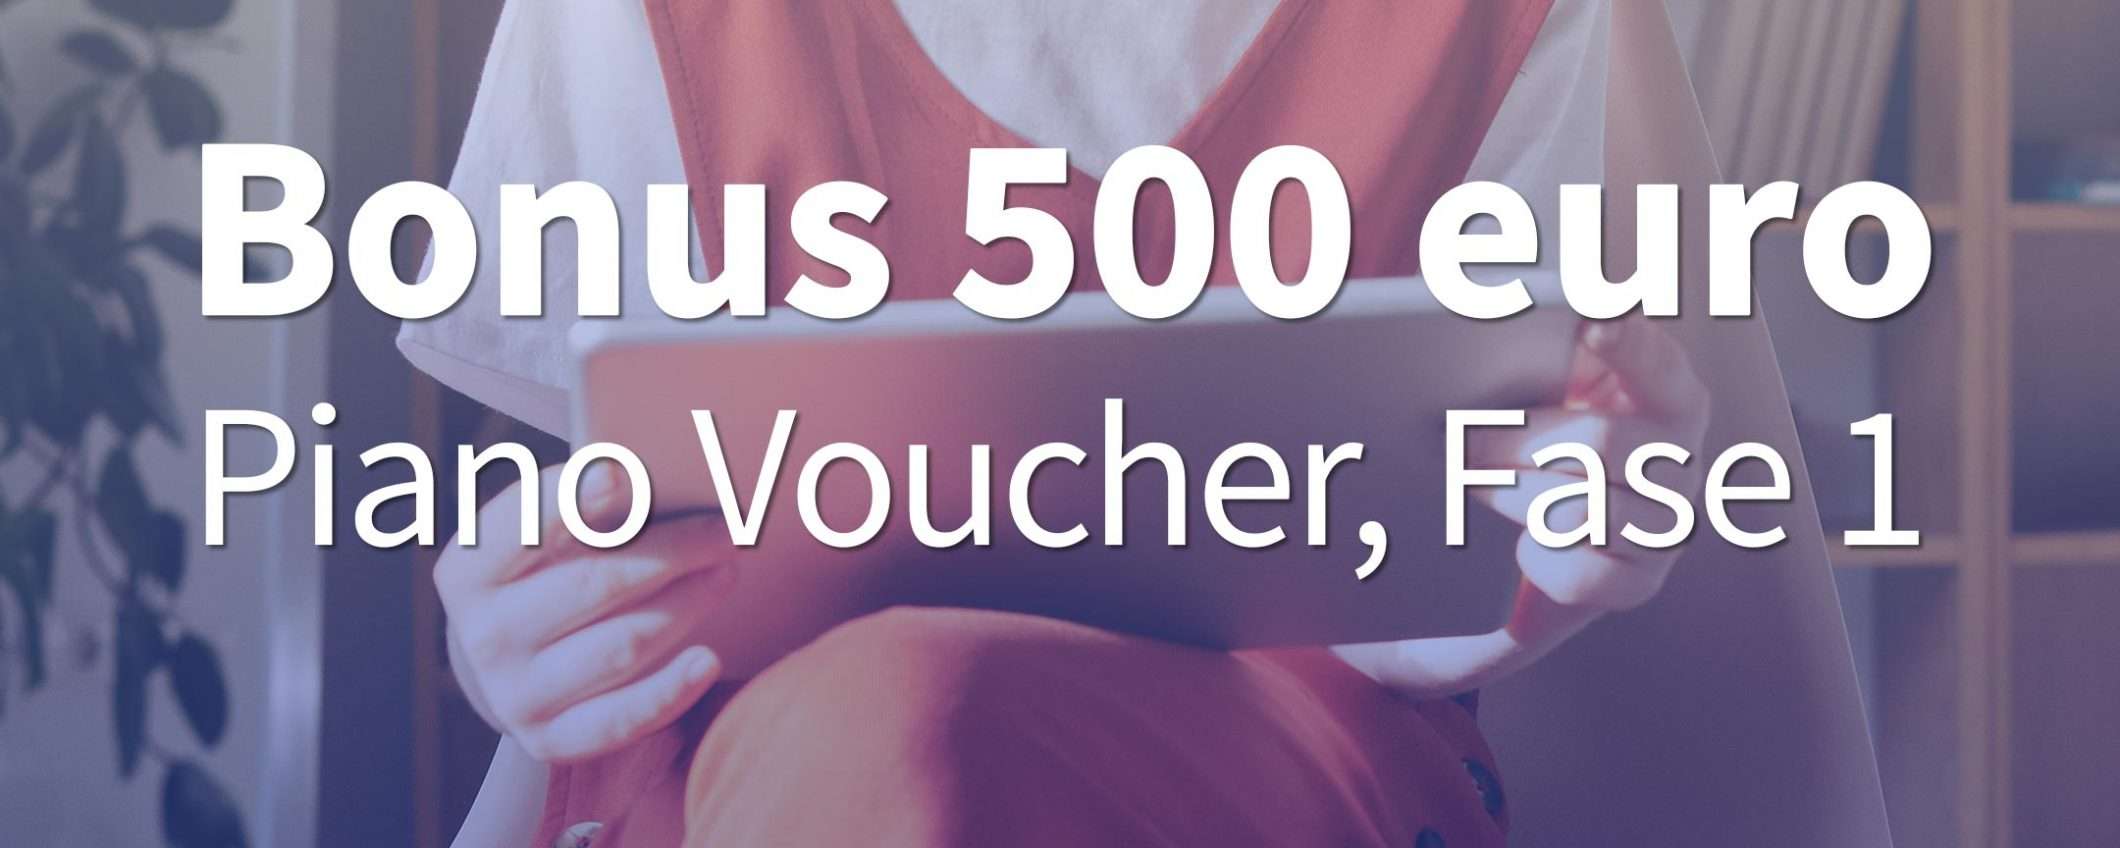 Bonus 500 euro: si parte oggi, come fare richiesta